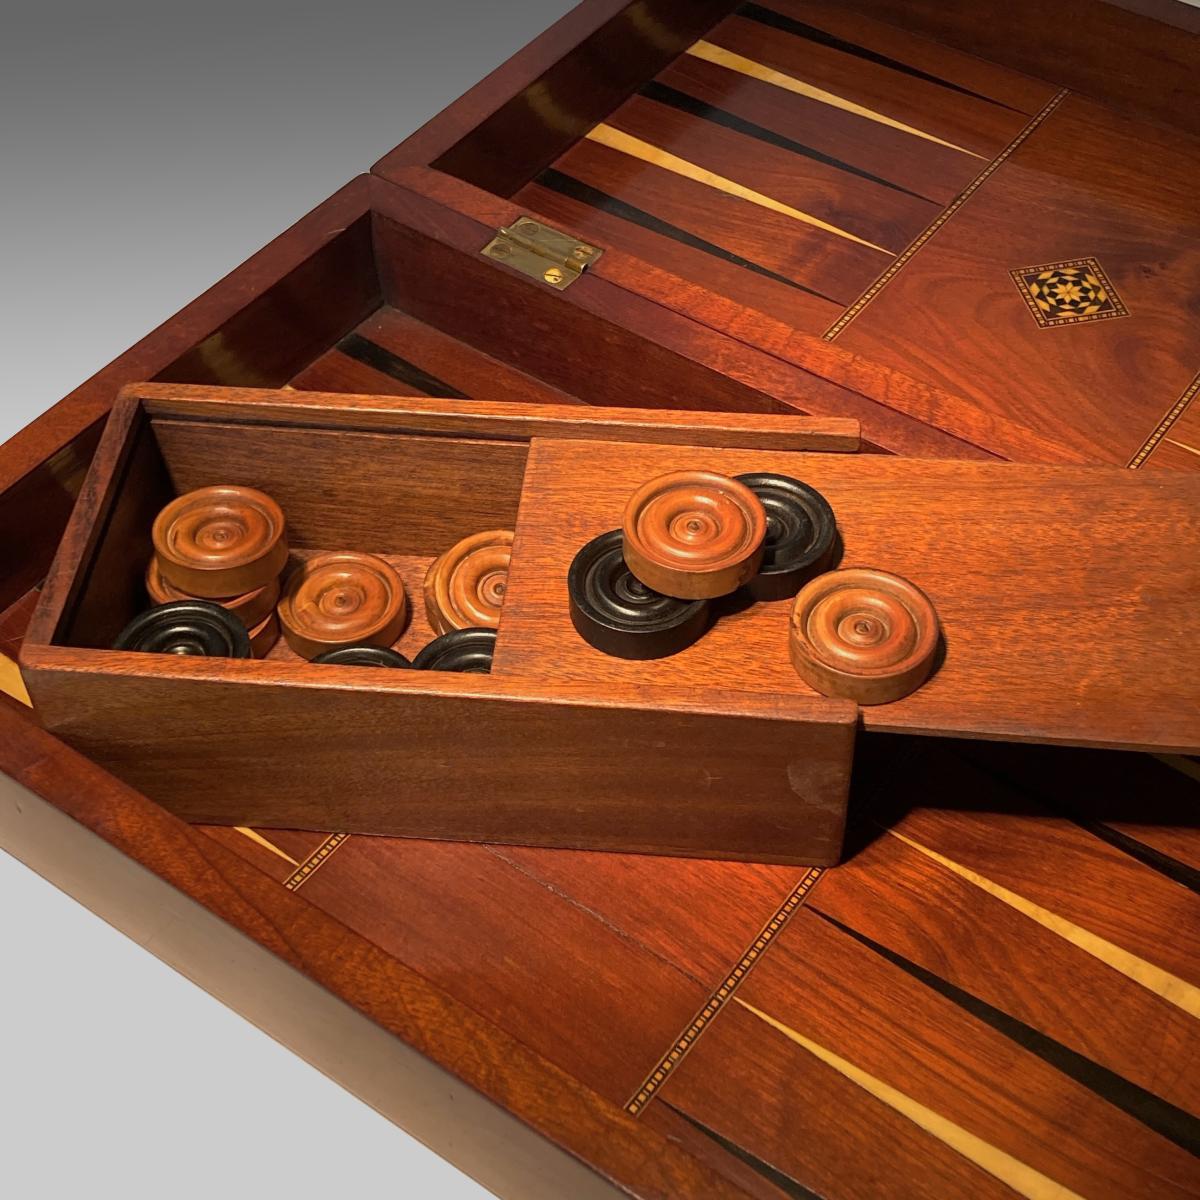 19th century mahogany backgammon and chess board